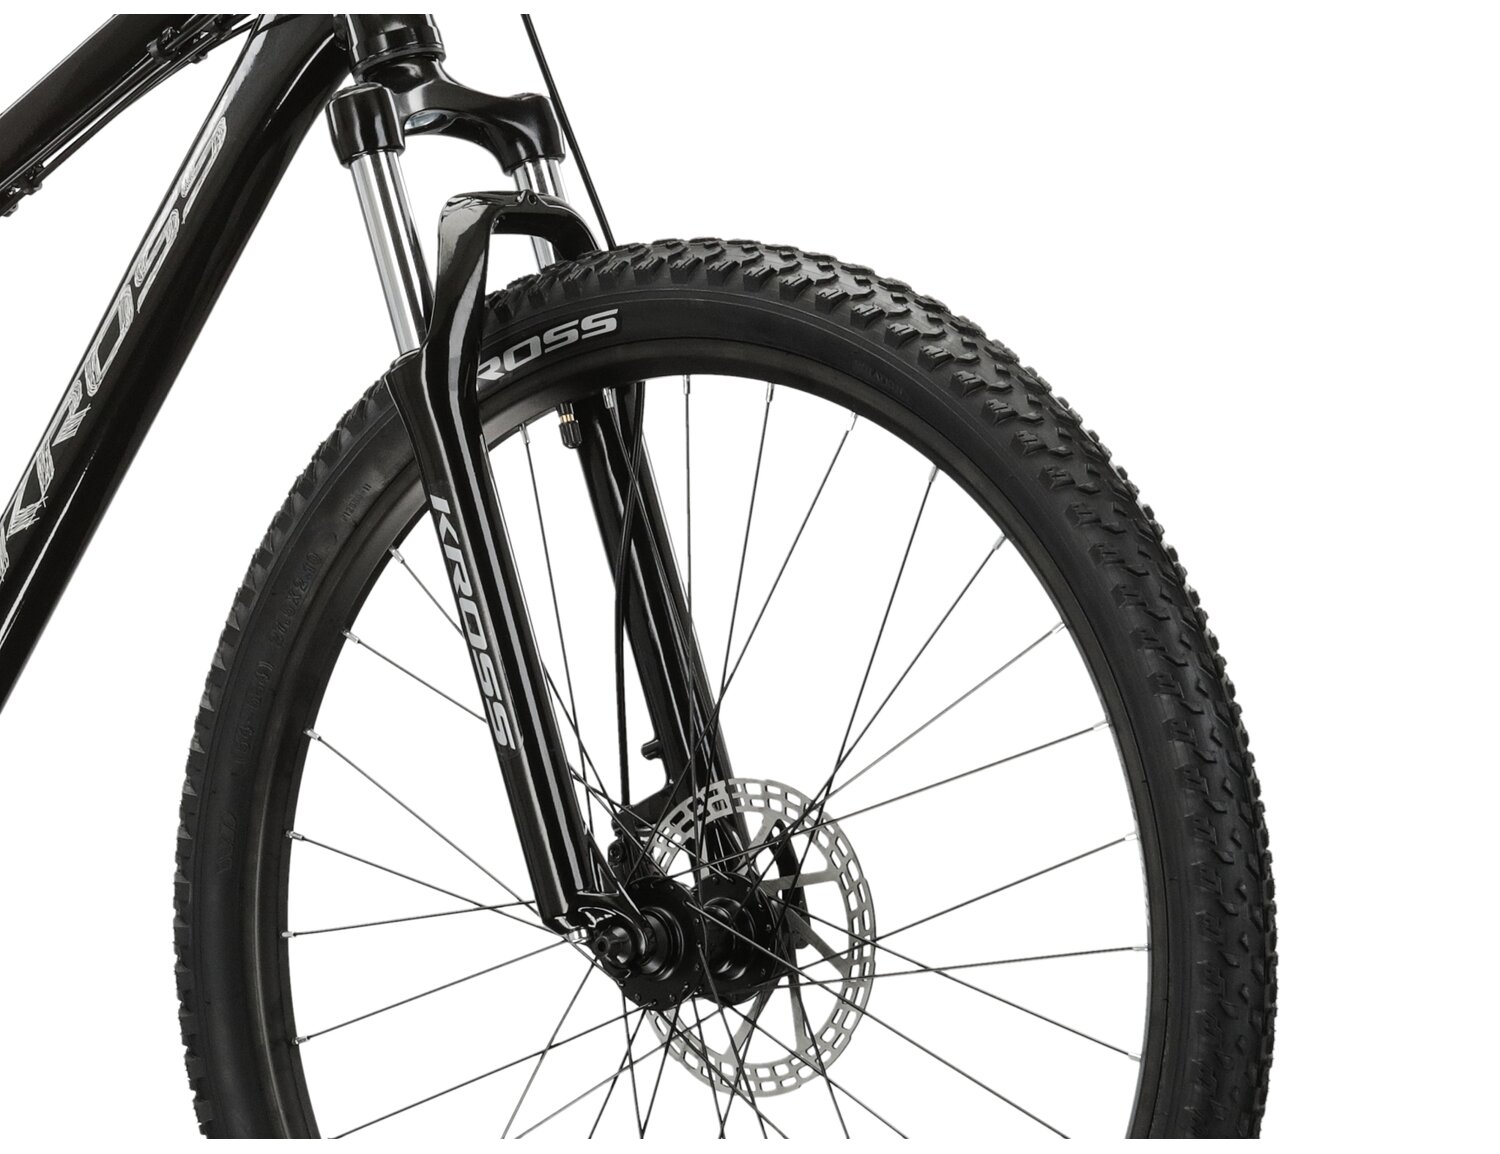  Aluminowa rama, amortyzowany widelec o skoku 80 mm oraz opony o szerokości 2,1 cala w rowerze juniorskim KROSS Berg JR 2.0 